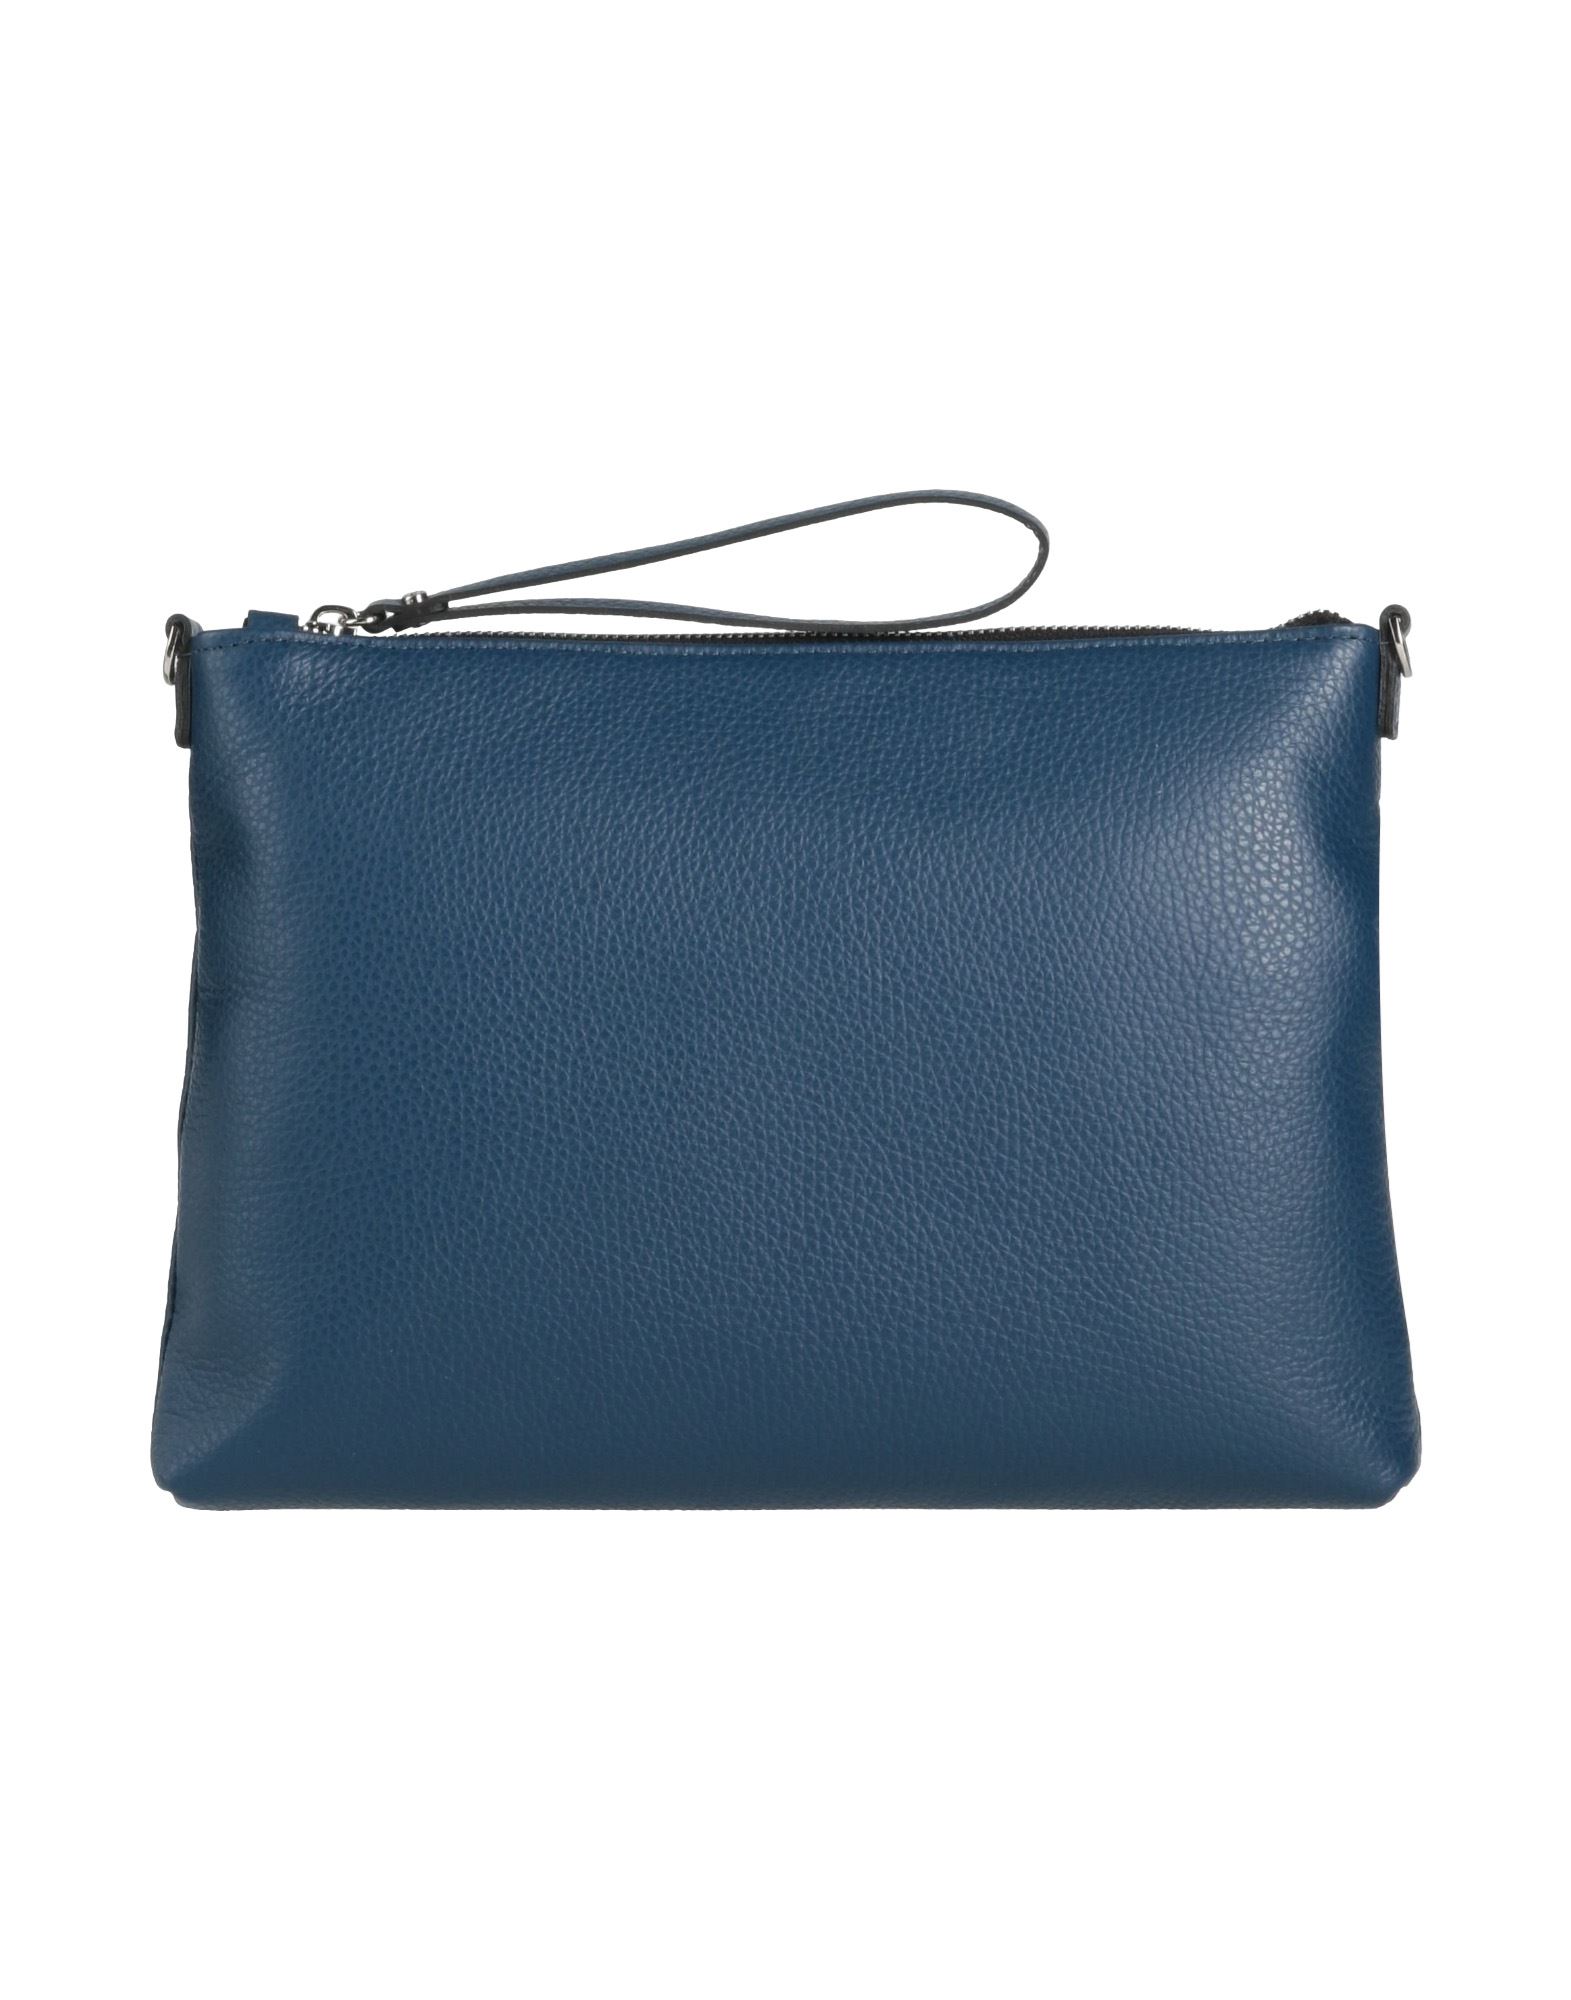 Gianni Chiarini Handbags In Blue